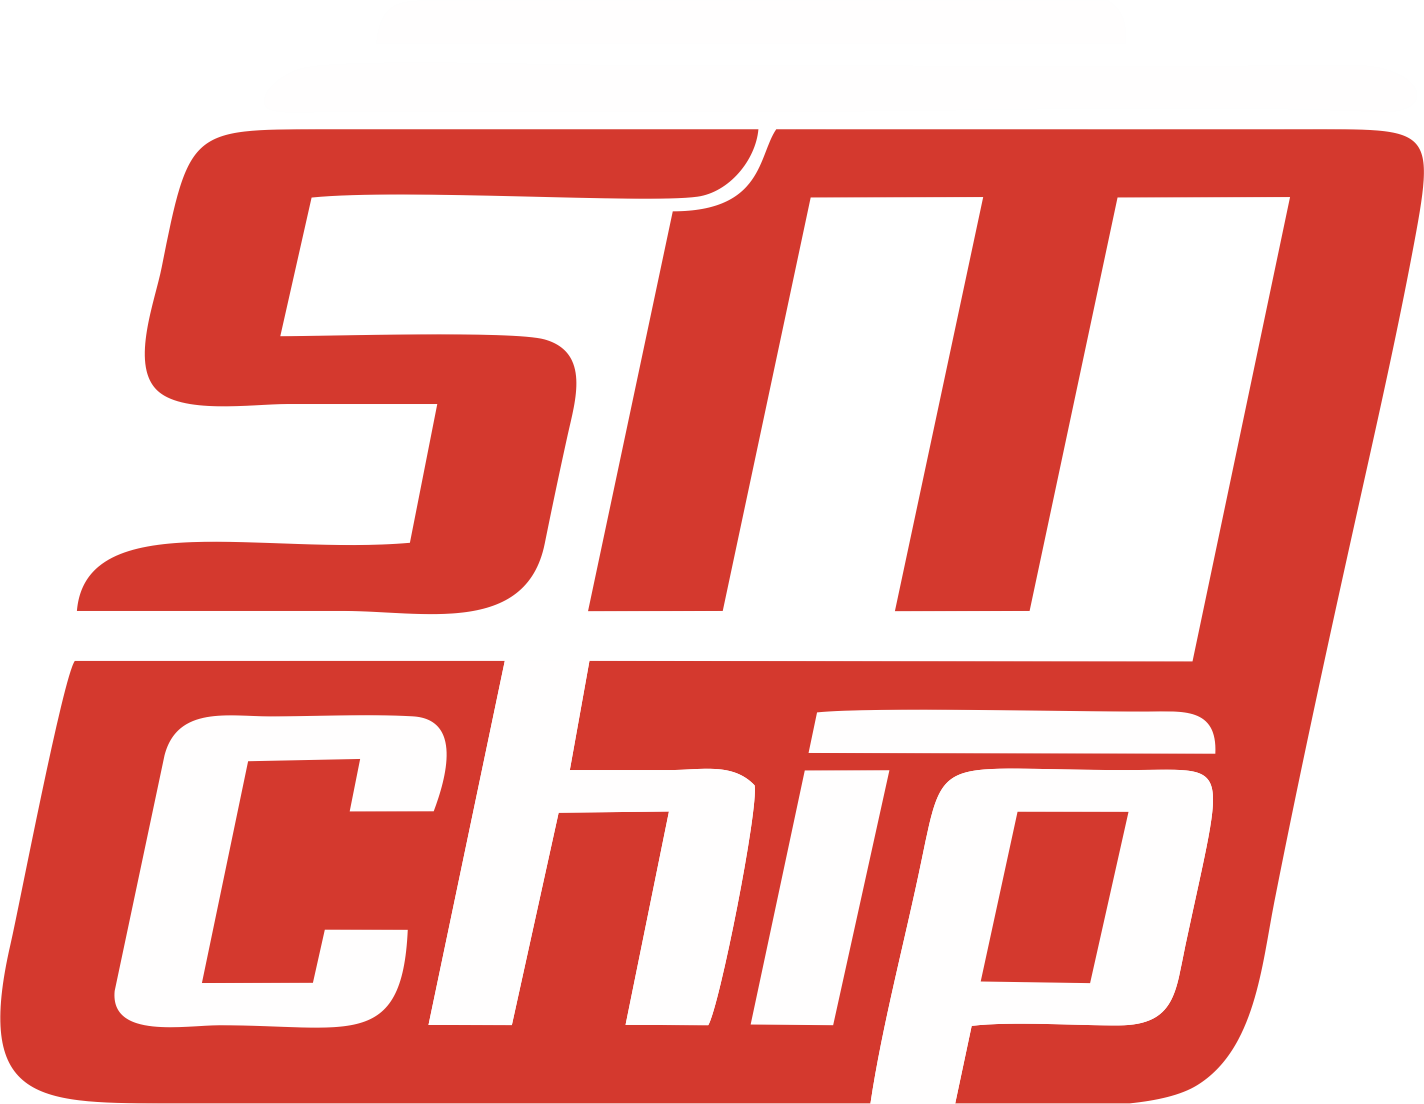 SM Chip Пенза